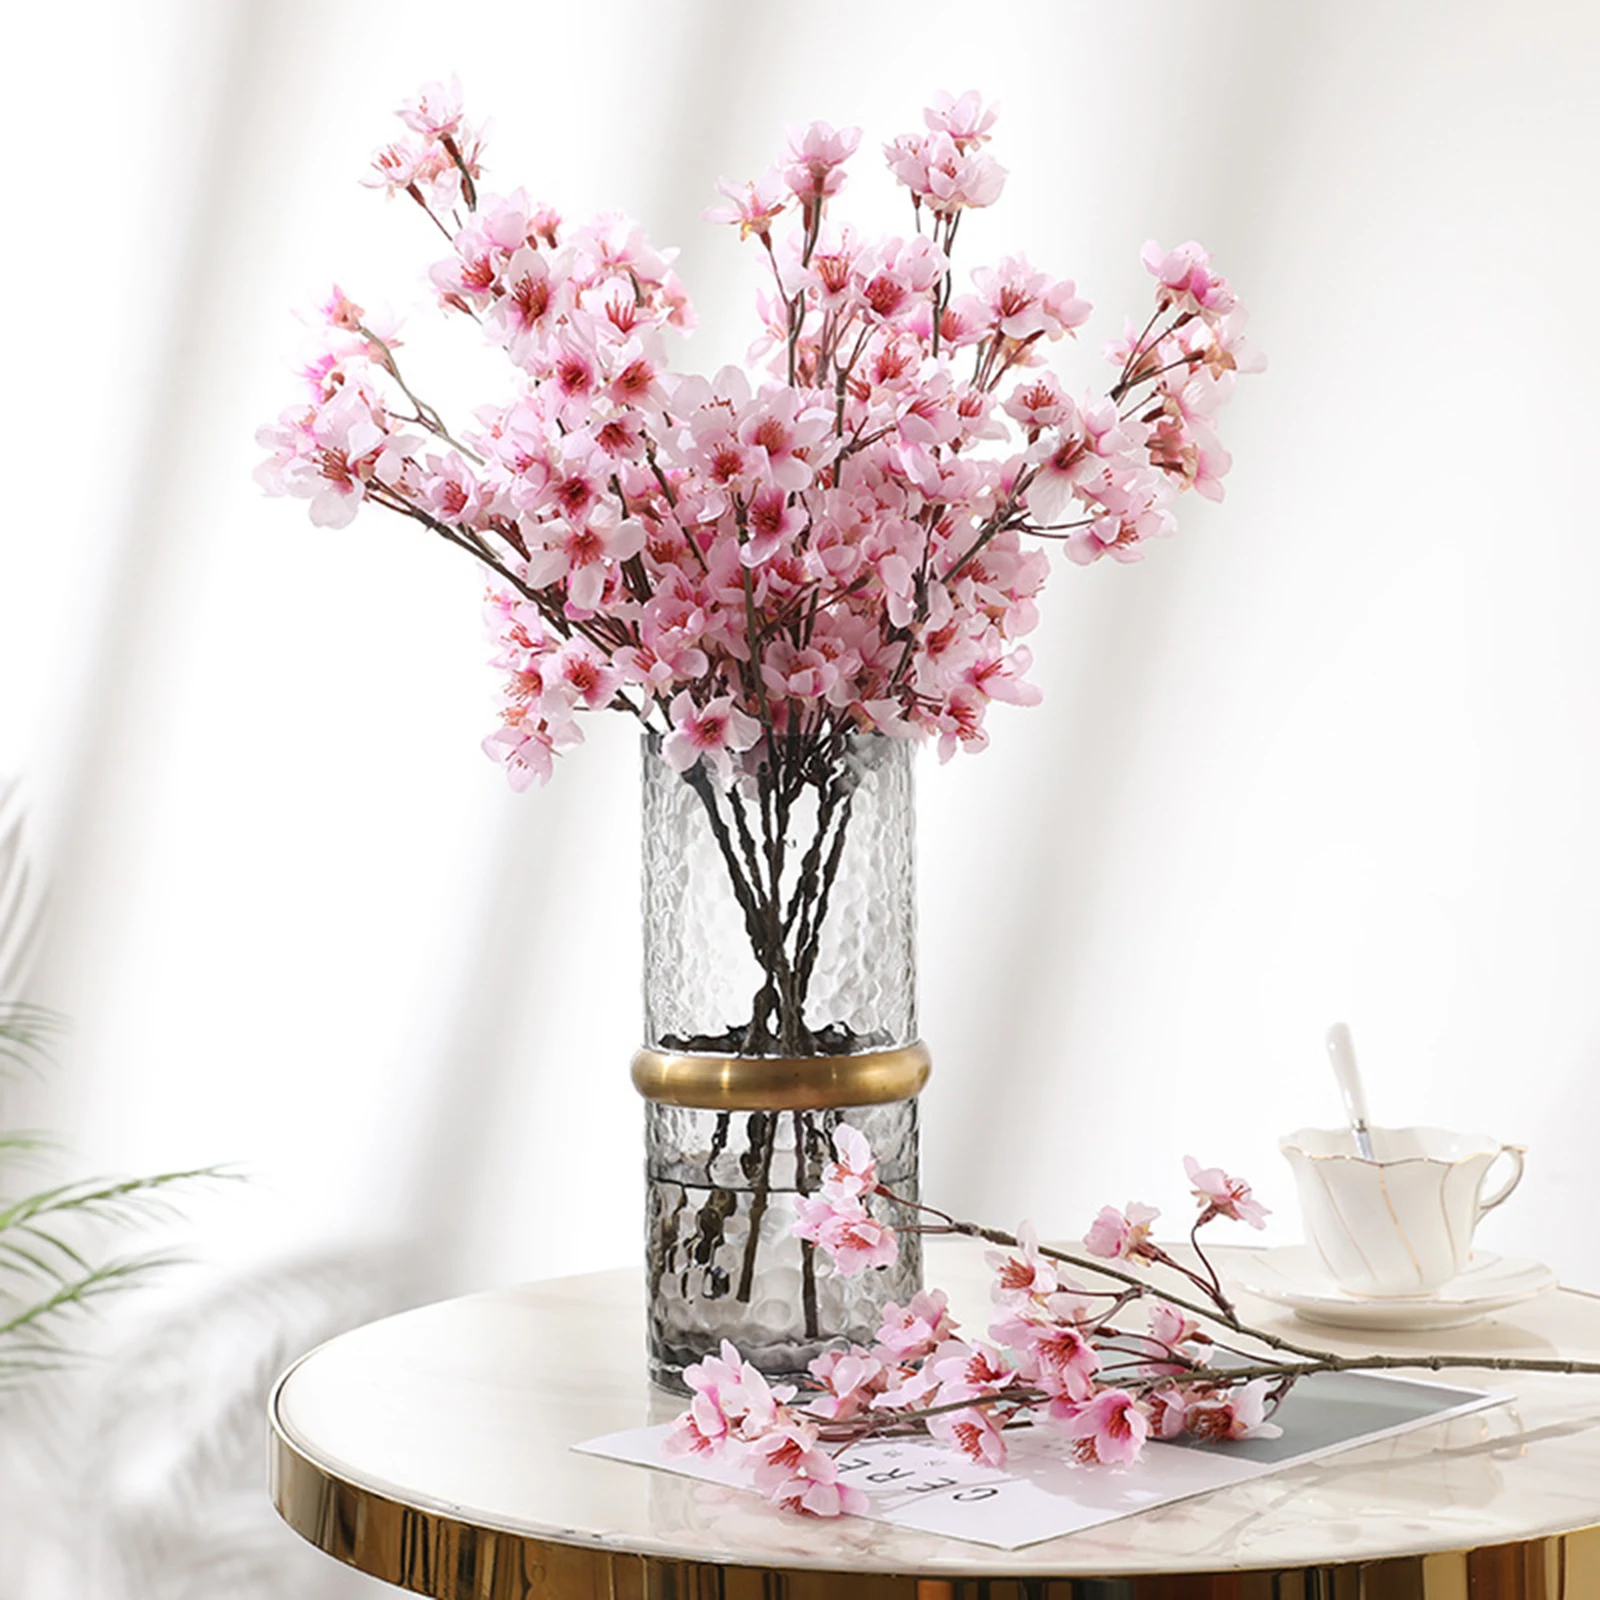 

Silk Artificial Flowers for Decoration Home Plastic Stem Bride Wedding Peach Blossom Bouquet Cherry Blossom Fake Flower DIY